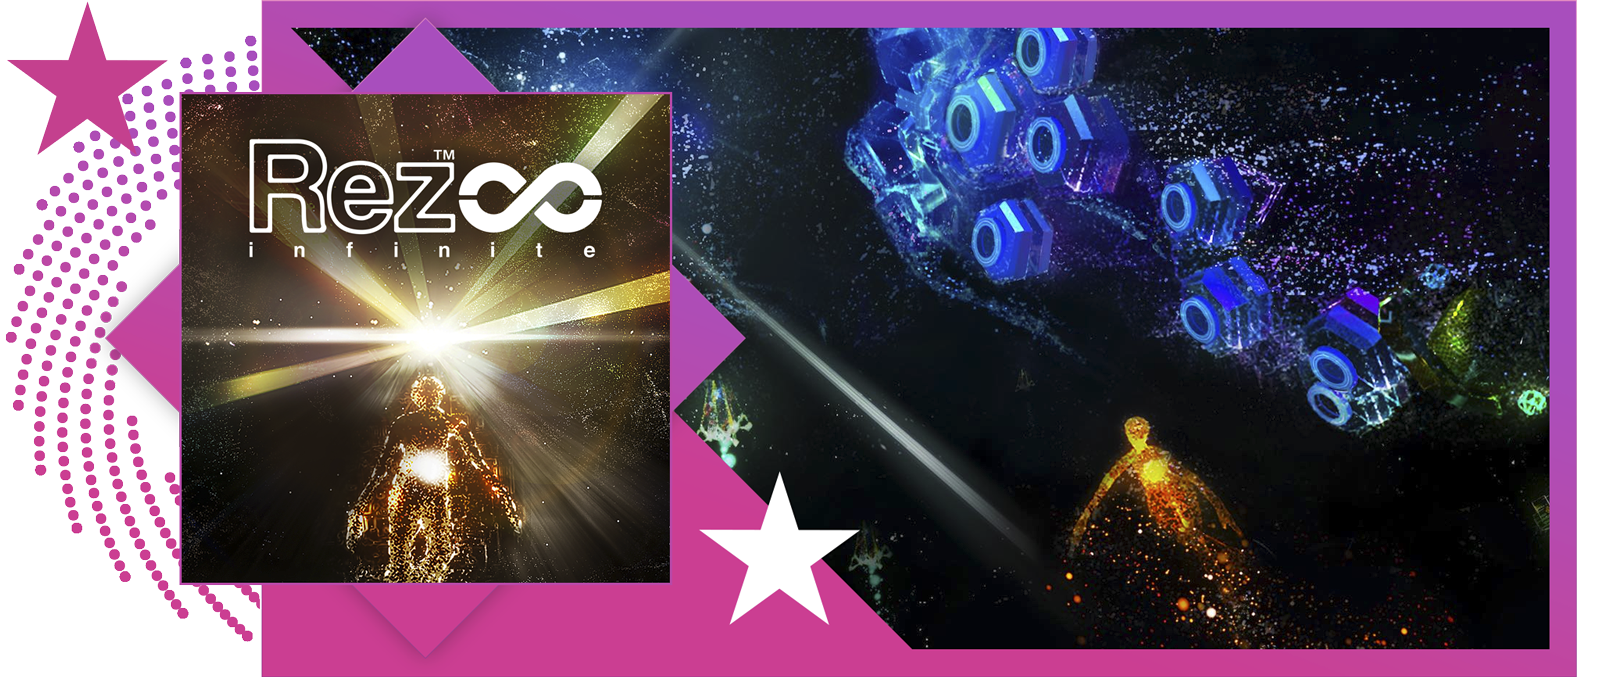 最佳节奏游戏的特色图像，展示《Rez无限》的主题宣传海报和游戏画面。